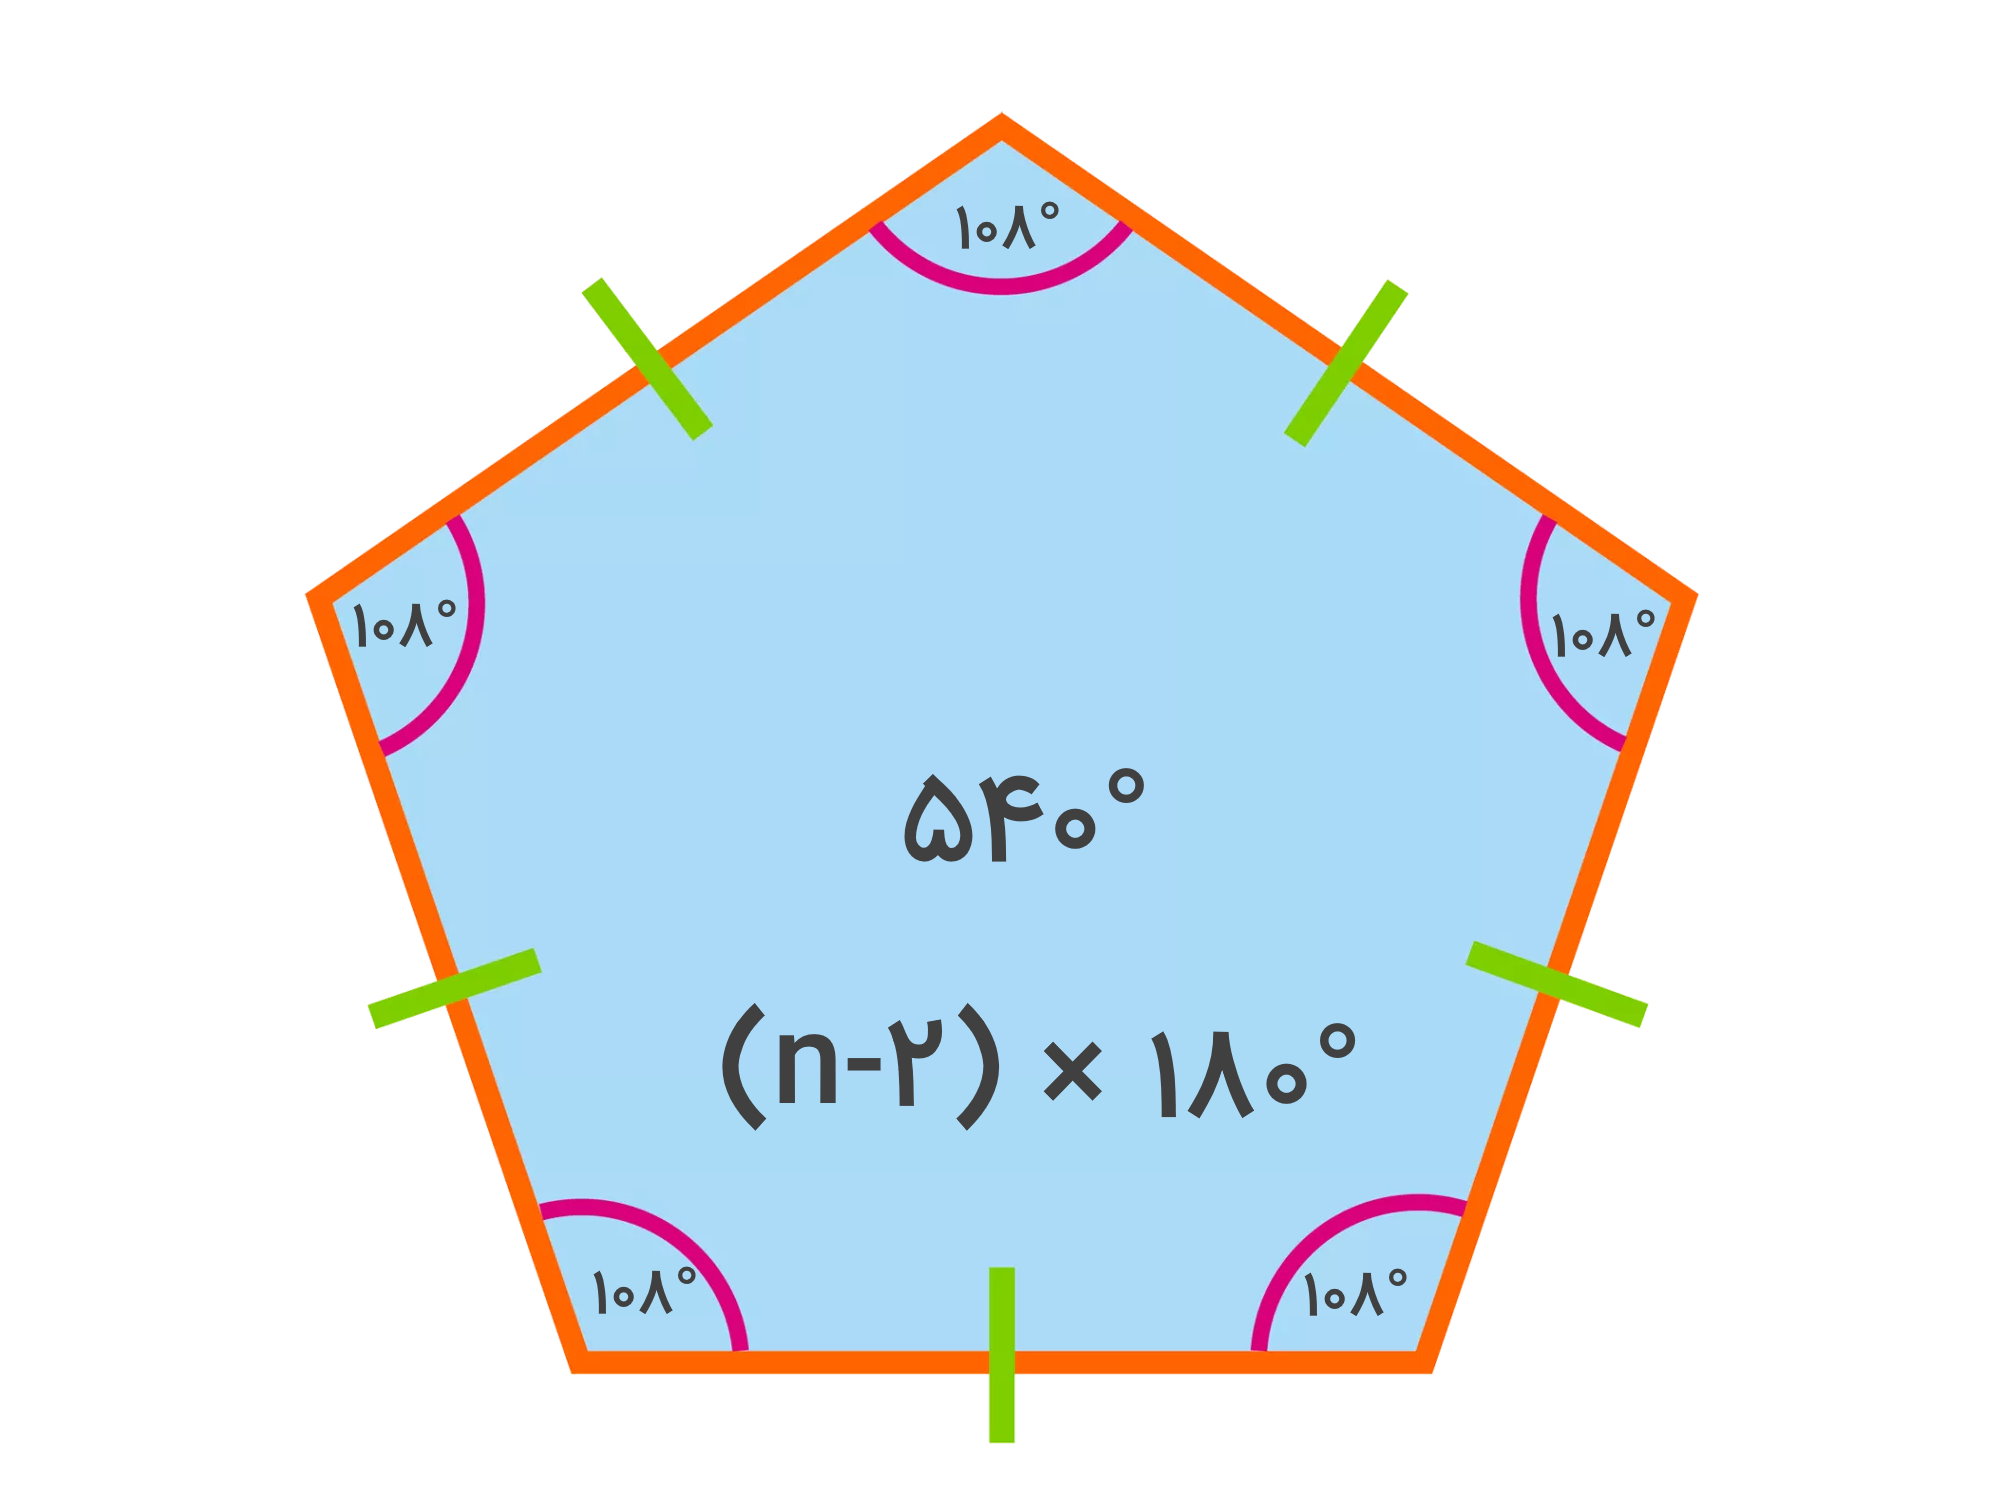 مجموع زوایای داخلی پنج ضلعی چند درجه است؟ — به زبان ساده